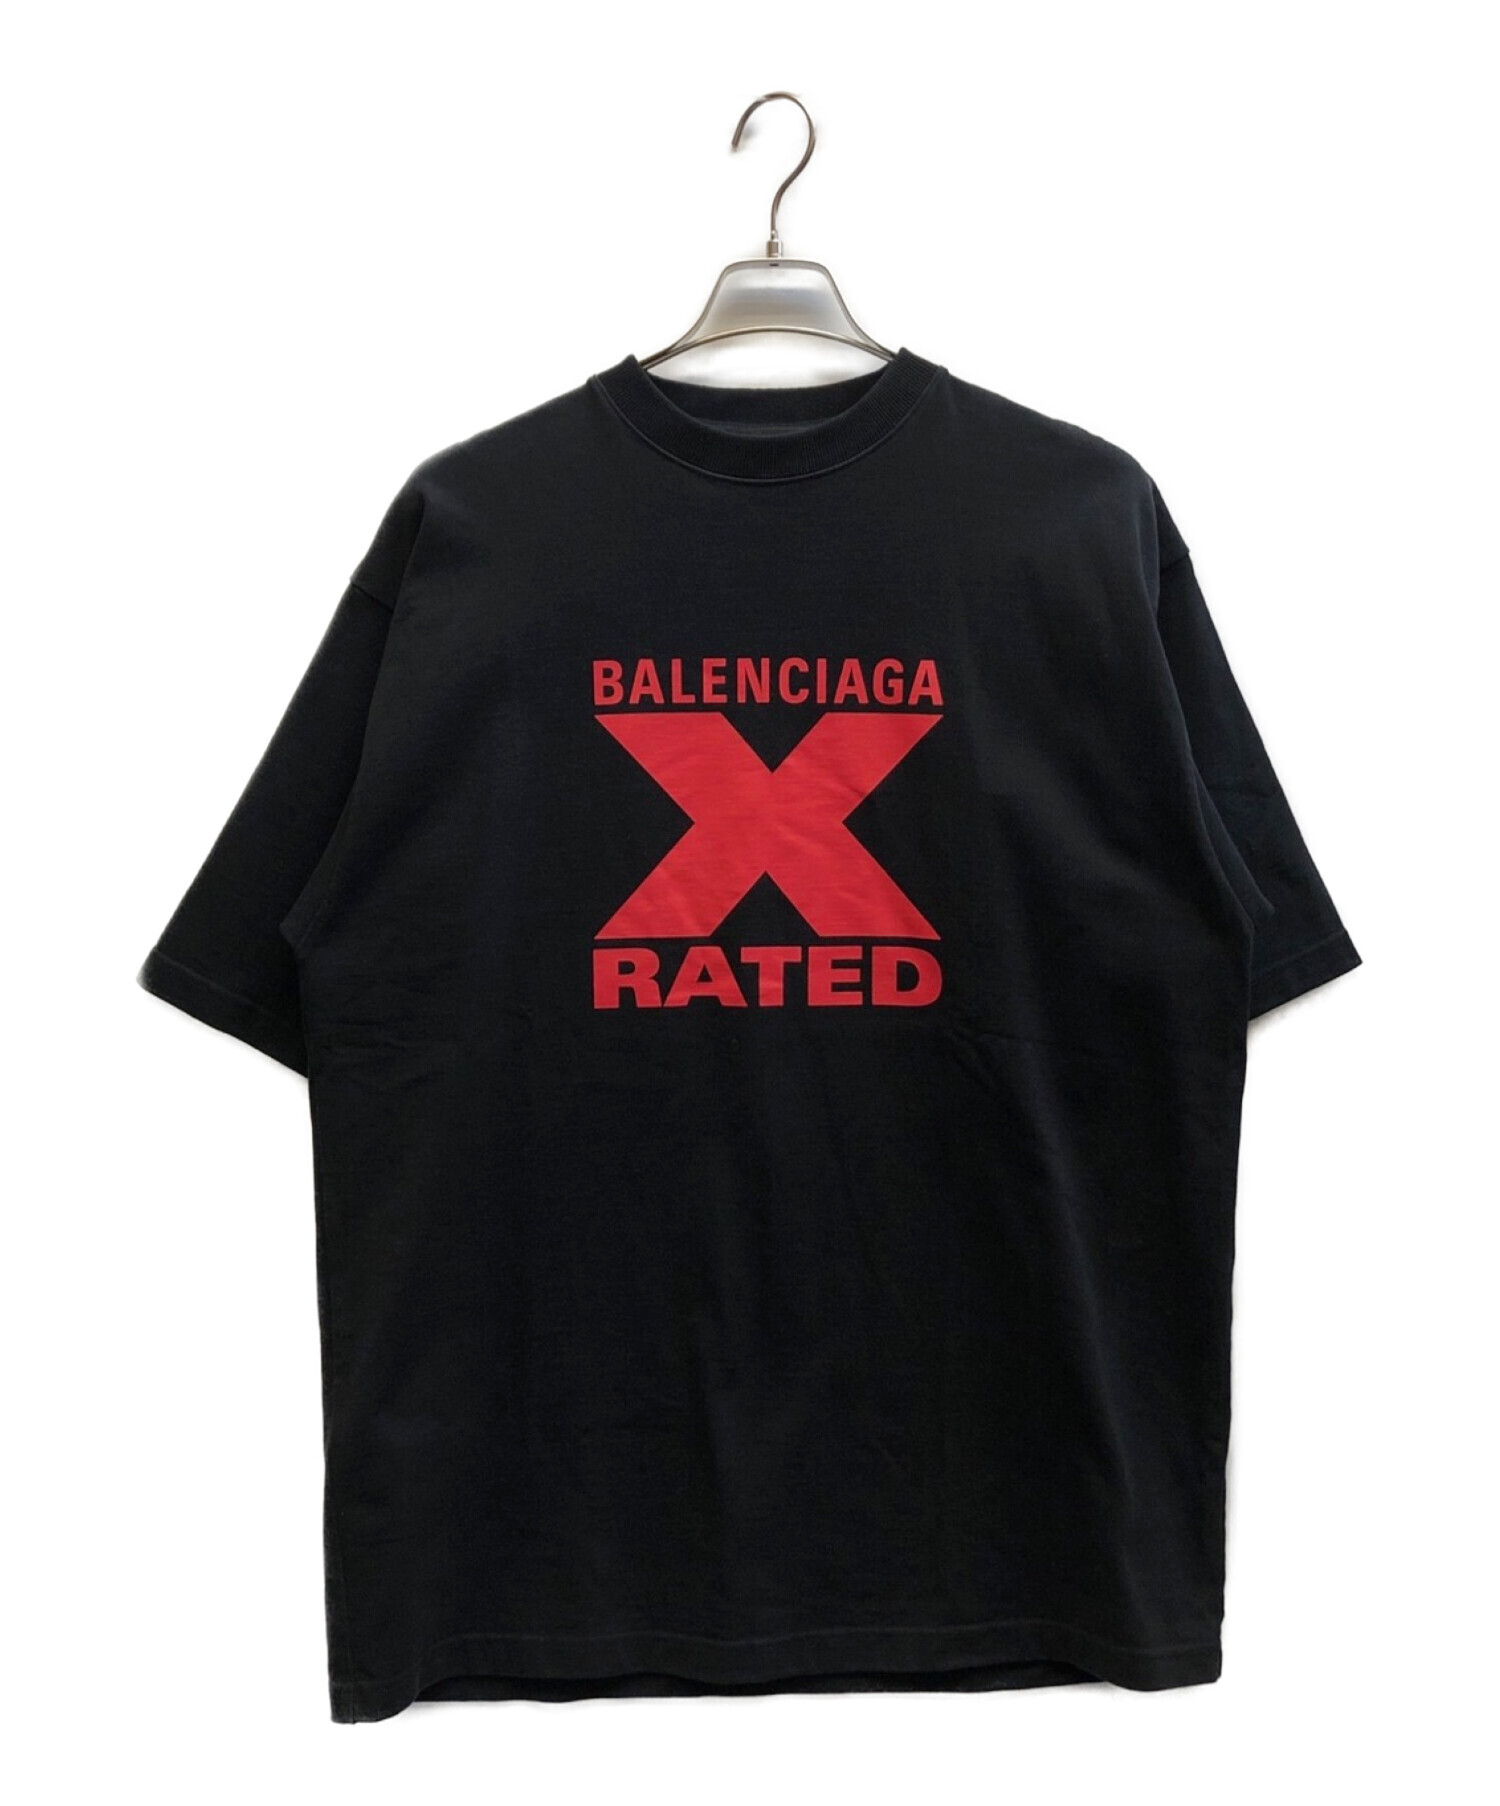 中古・古着通販】BALENCIAGA (バレンシアガ) X-RATED LARGE FIT T 